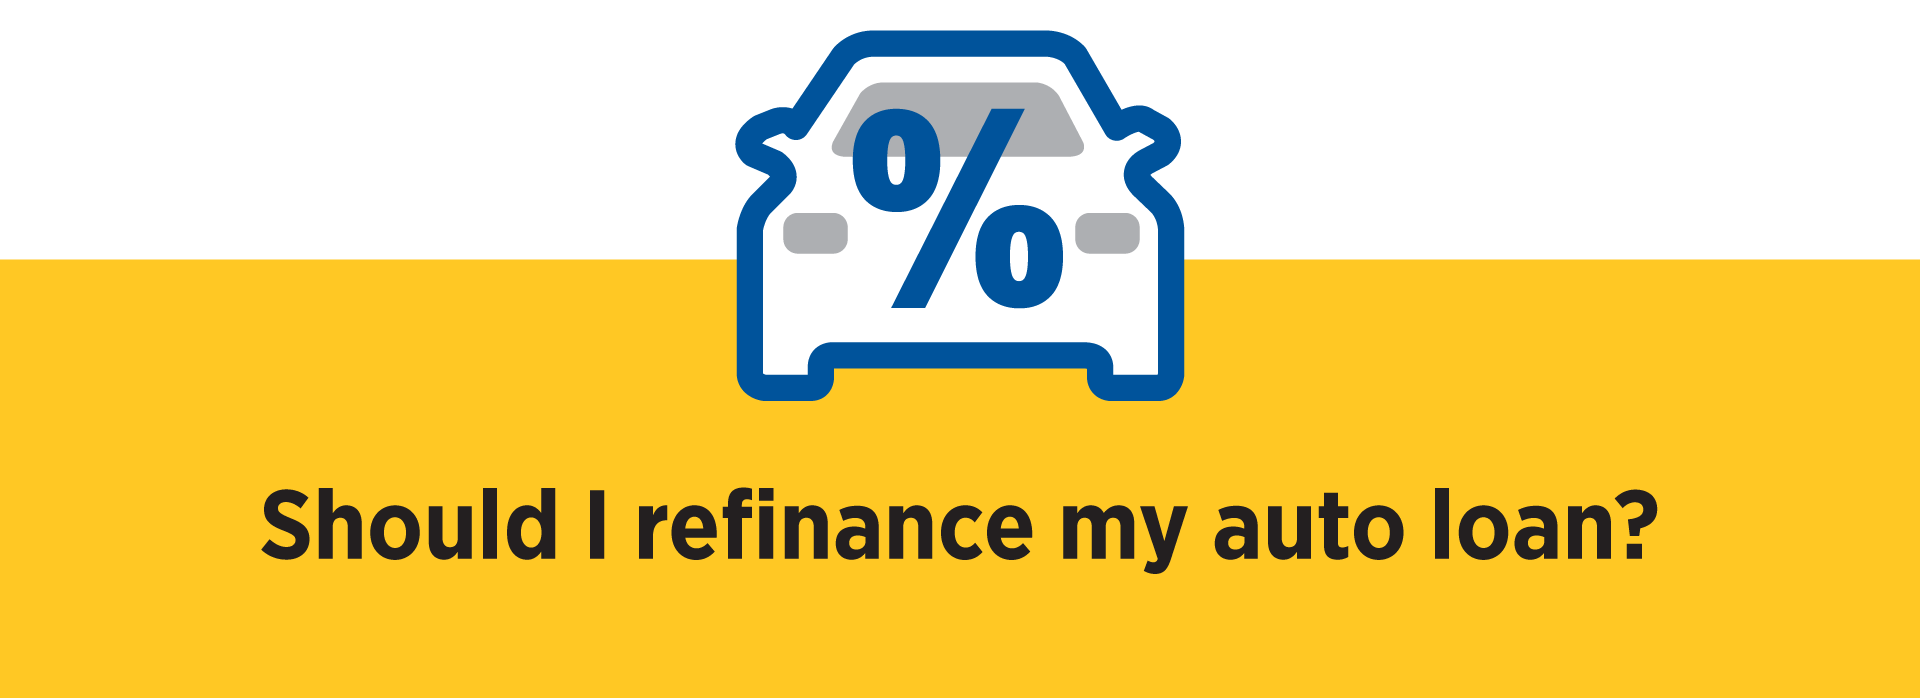 Auto Calculator Icon Should I refinance my auto loan